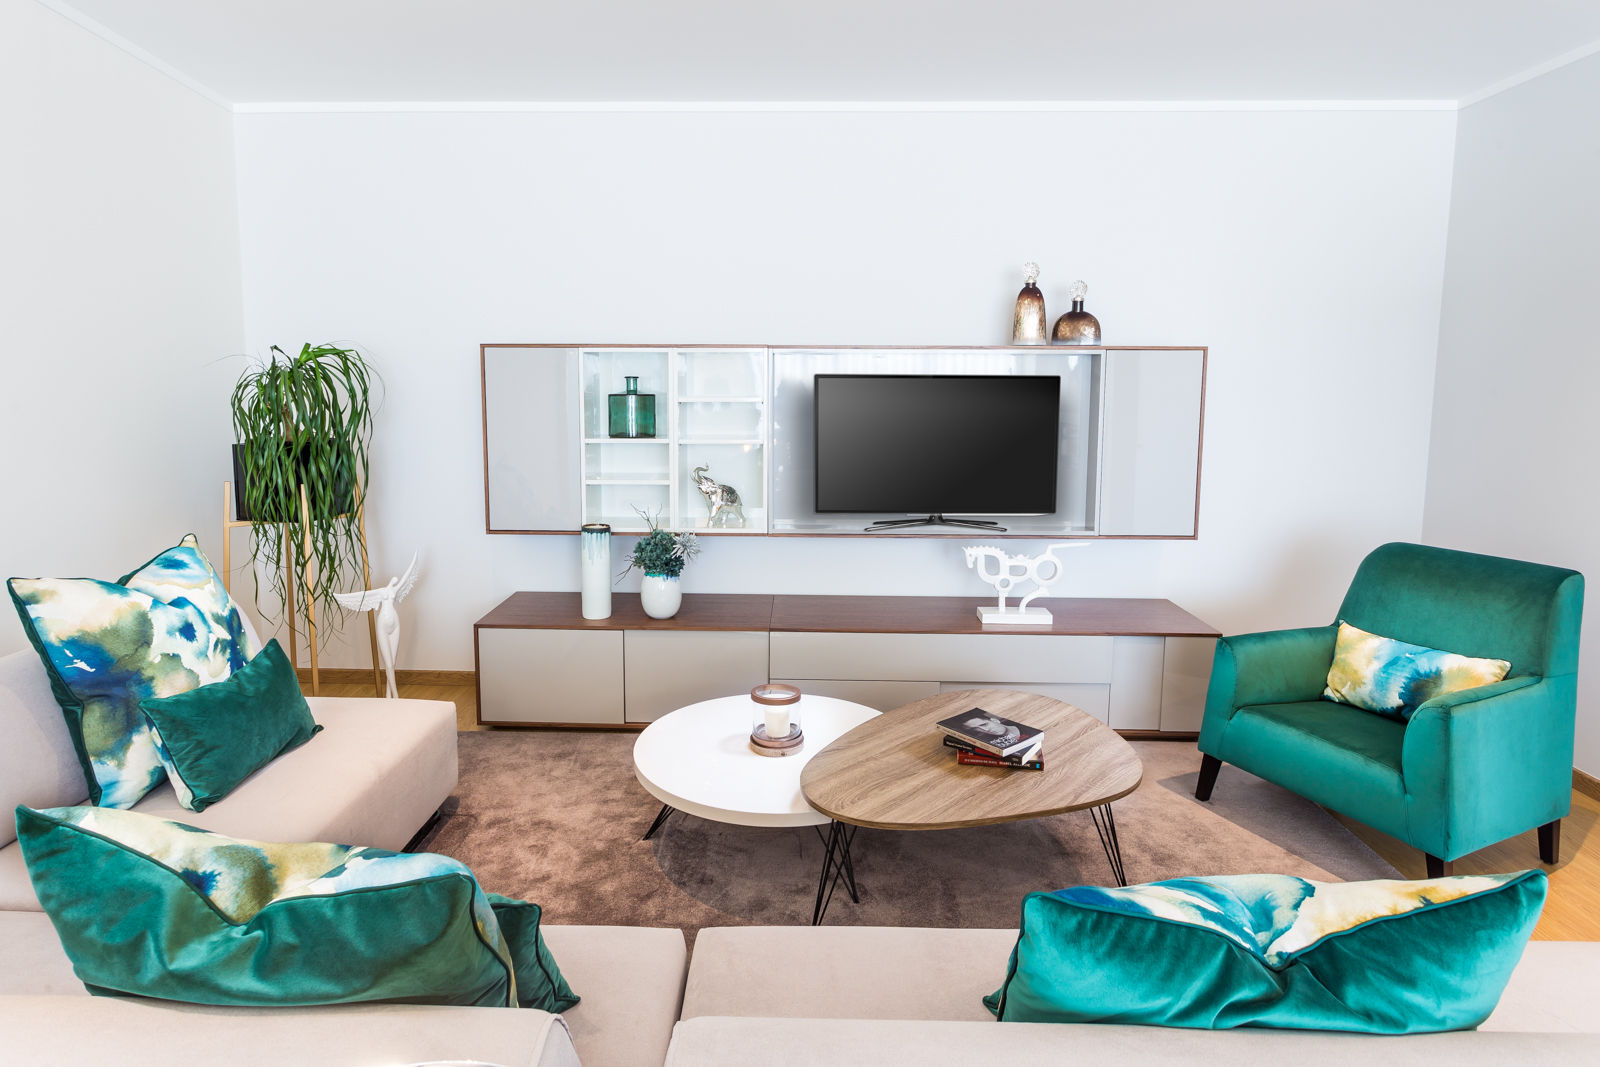 Apartamentos do Forum Barreiro, Glim - Design de Interiores Glim - Design de Interiores Modern Living Room TV stands & cabinets